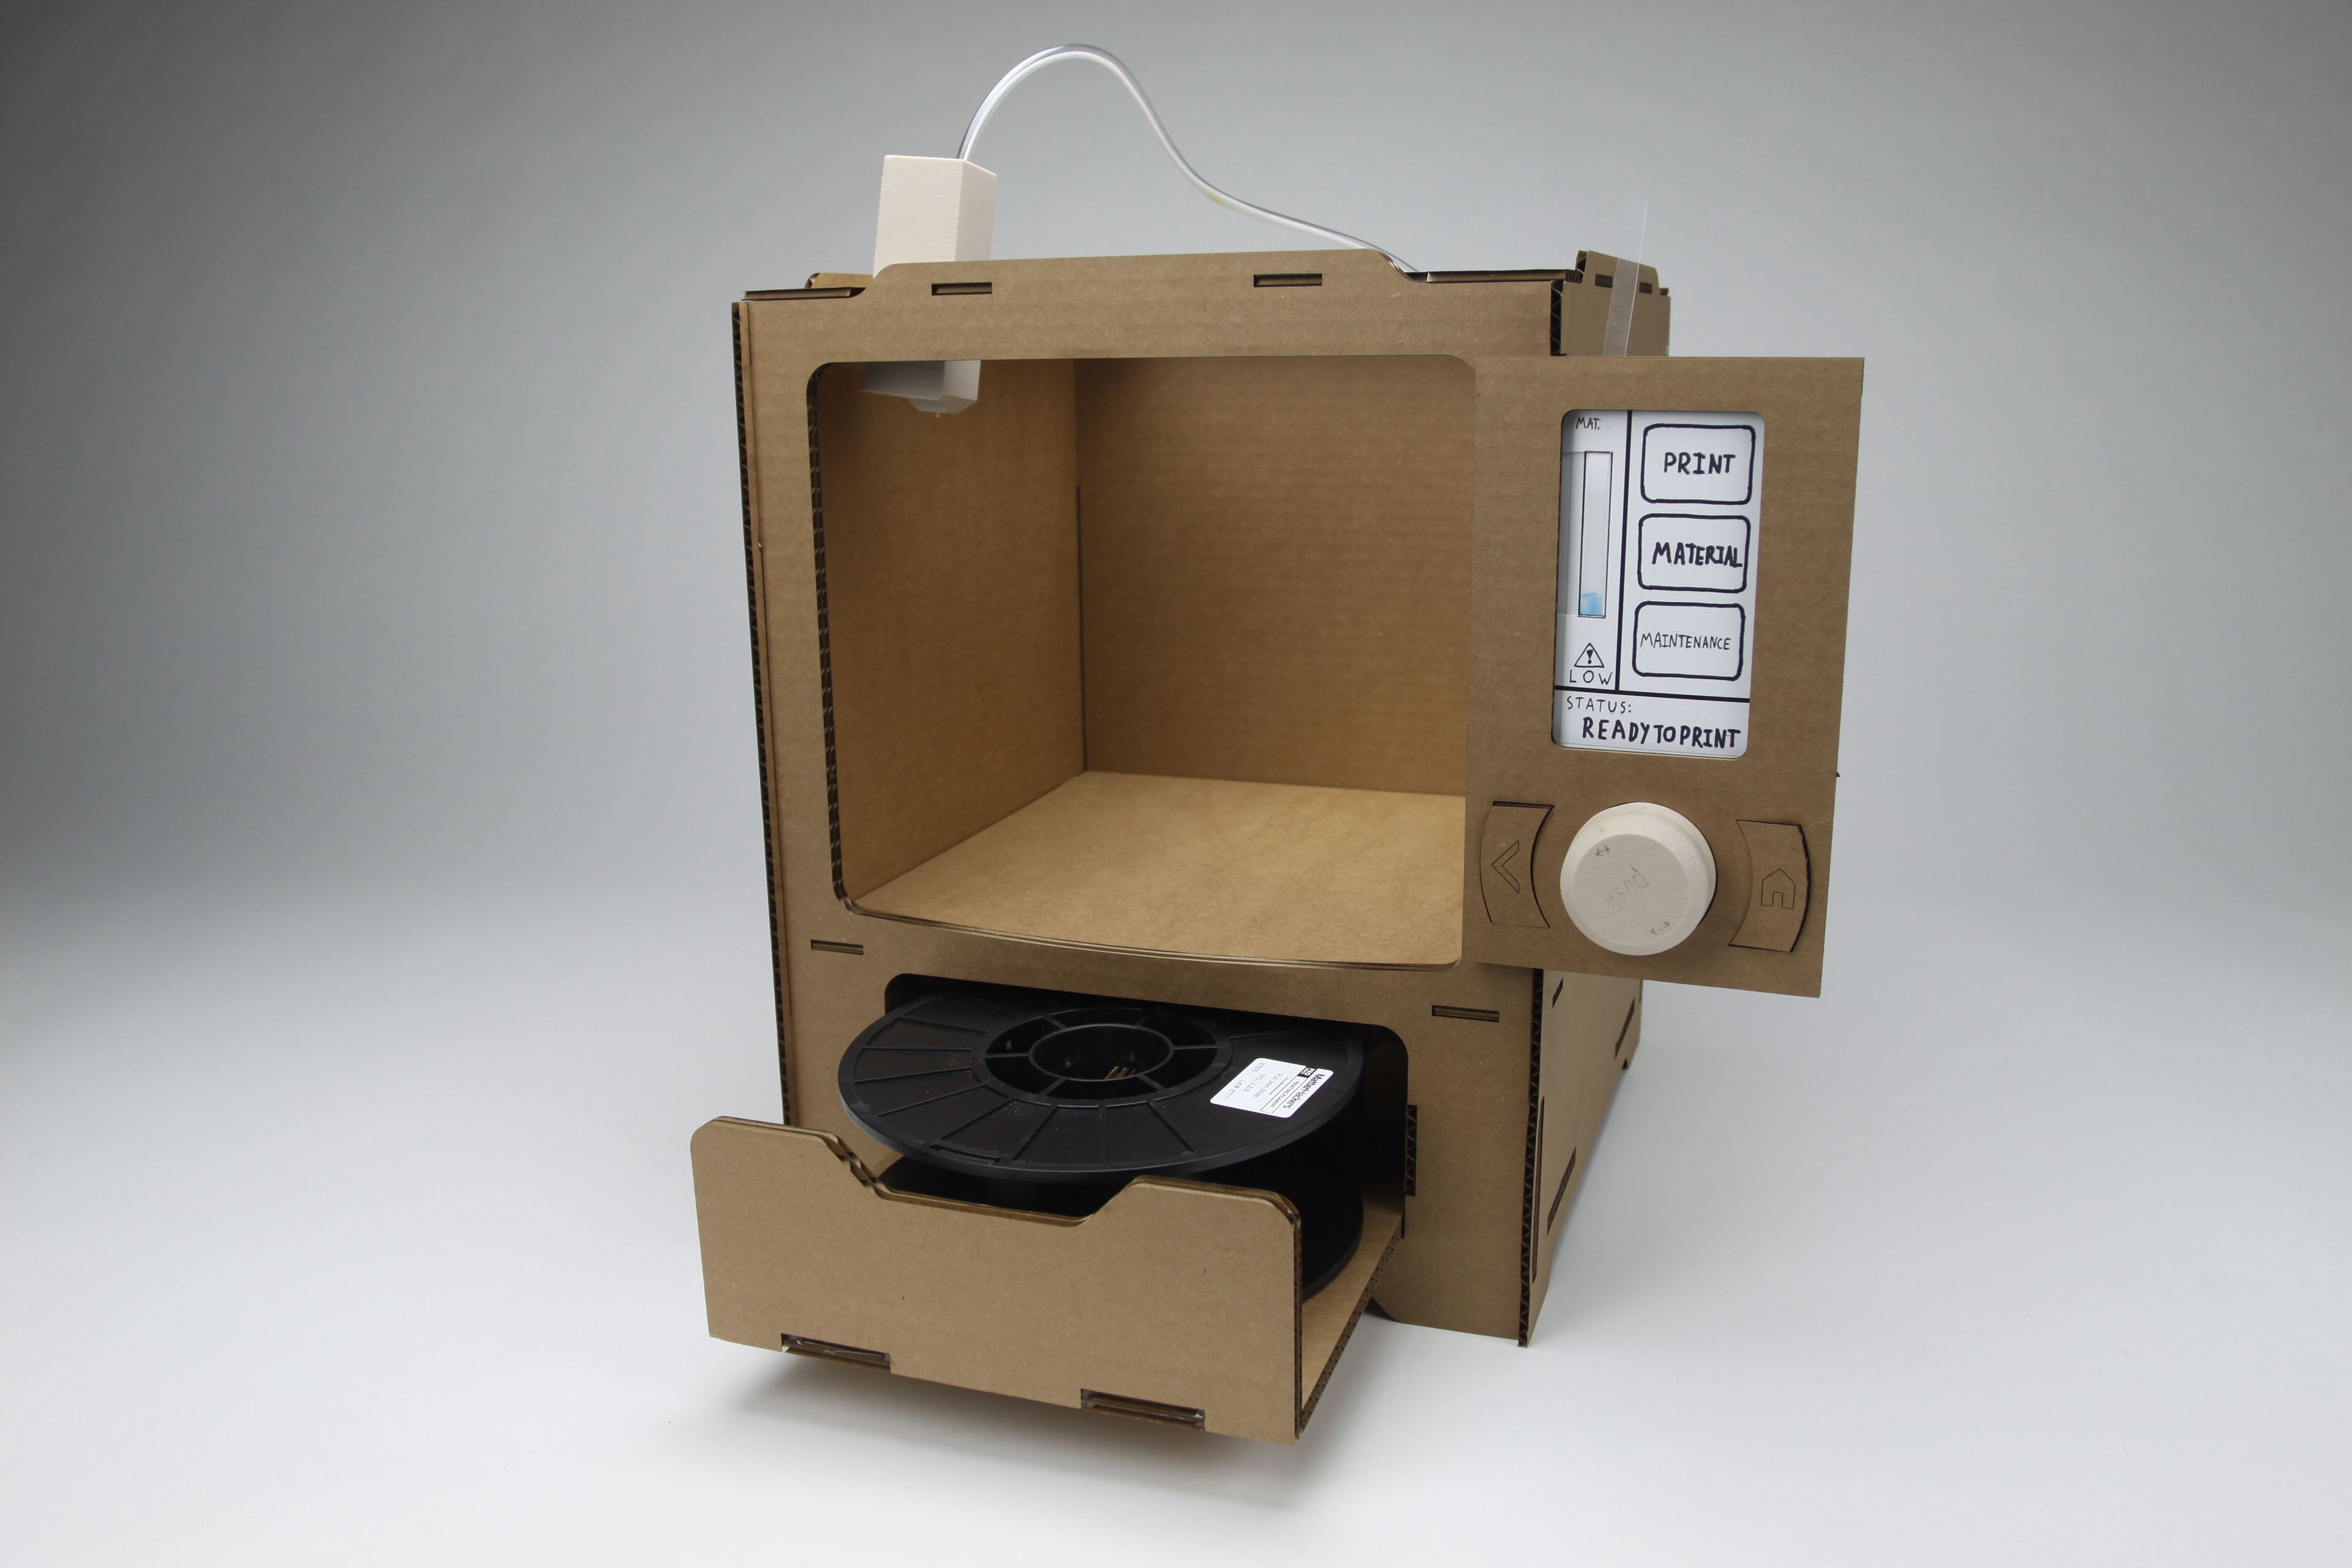 Hertog hoesten Absorberen Noah Posner - 3D Printer Paper Prototype